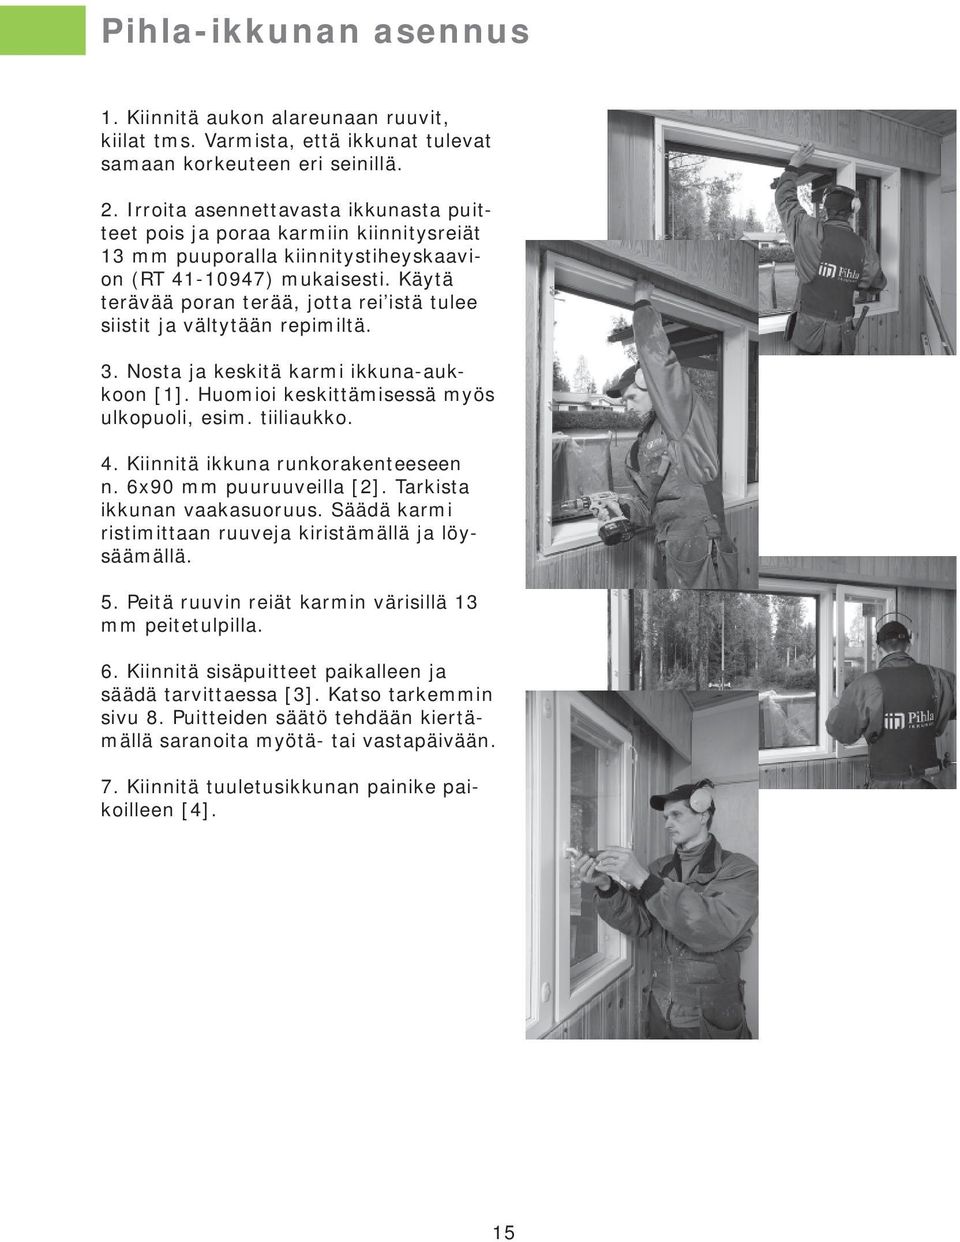 Käytä terävää poran terää, jotta rei istä tulee siistit ja vältytään repimiltä. [2] 3. Nosta ja keskitä karmi ikkuna-aukkoon [1]. Huomioi keskittämisessä myös ulkopuoli, esim. tiiliaukko. 4.